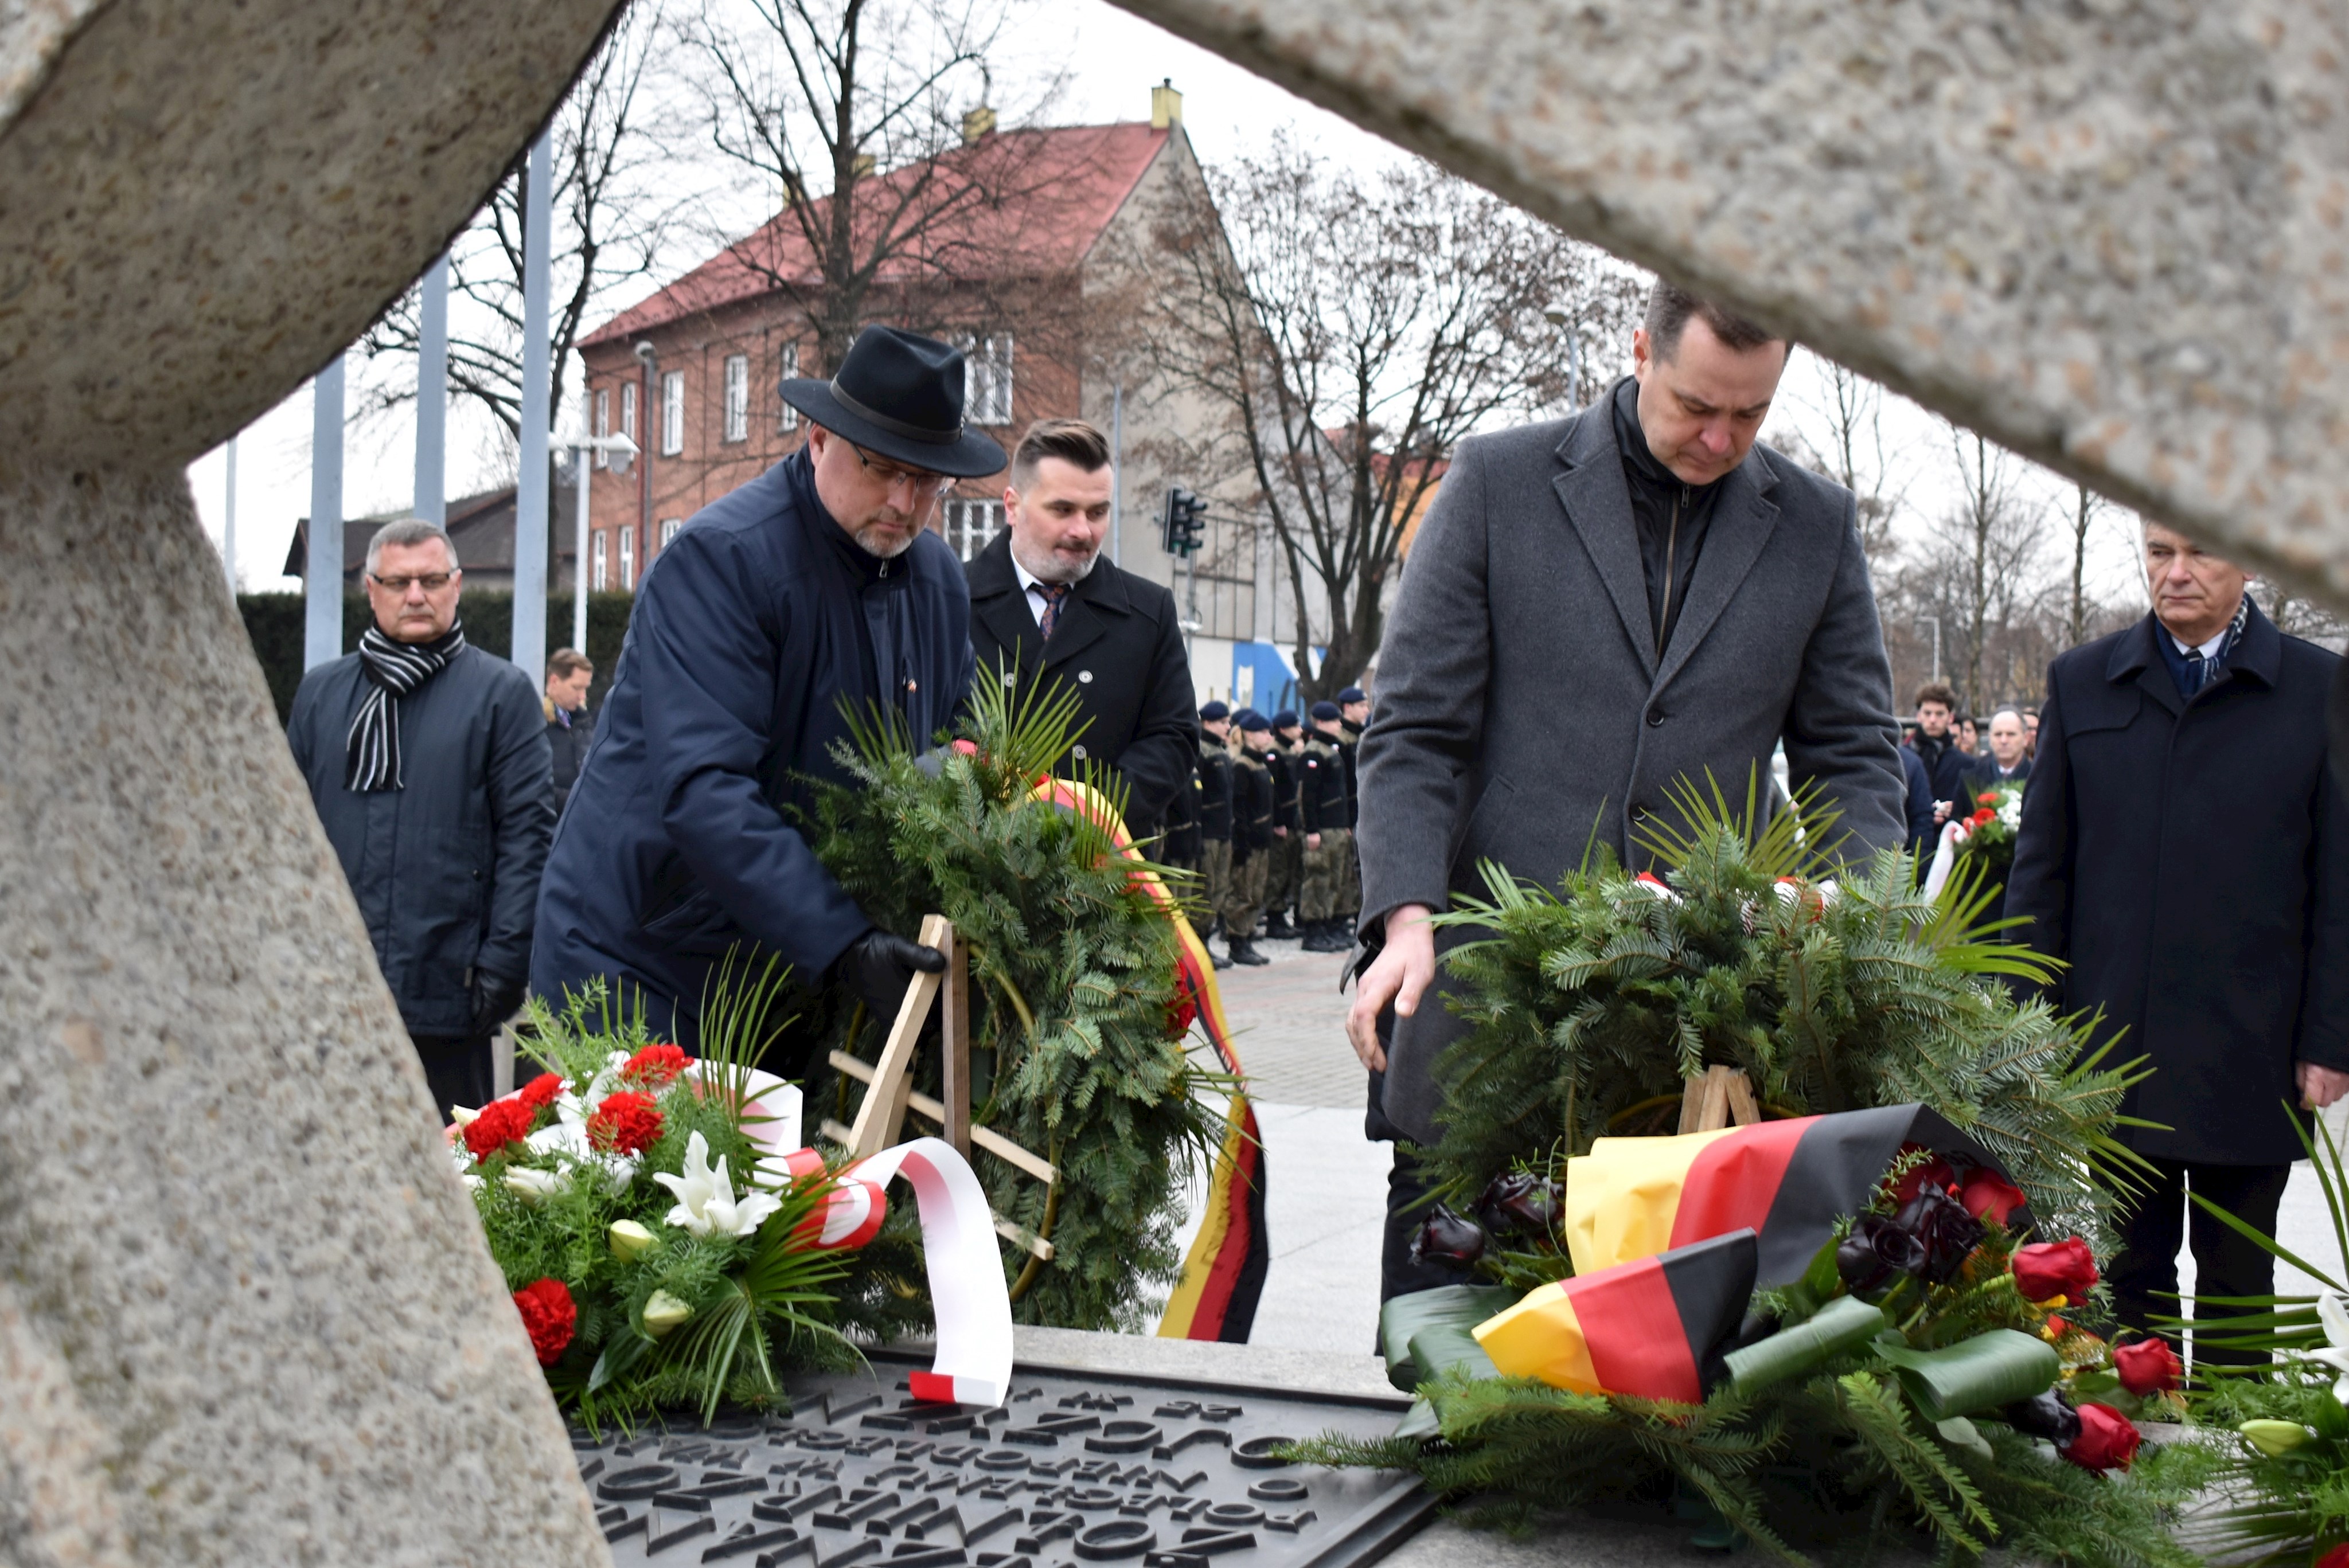 Kranzniederlegung bei der Gedenkfeier zum 78. Jahrestag der Befreiung des KL Auschwitz-Birkenau